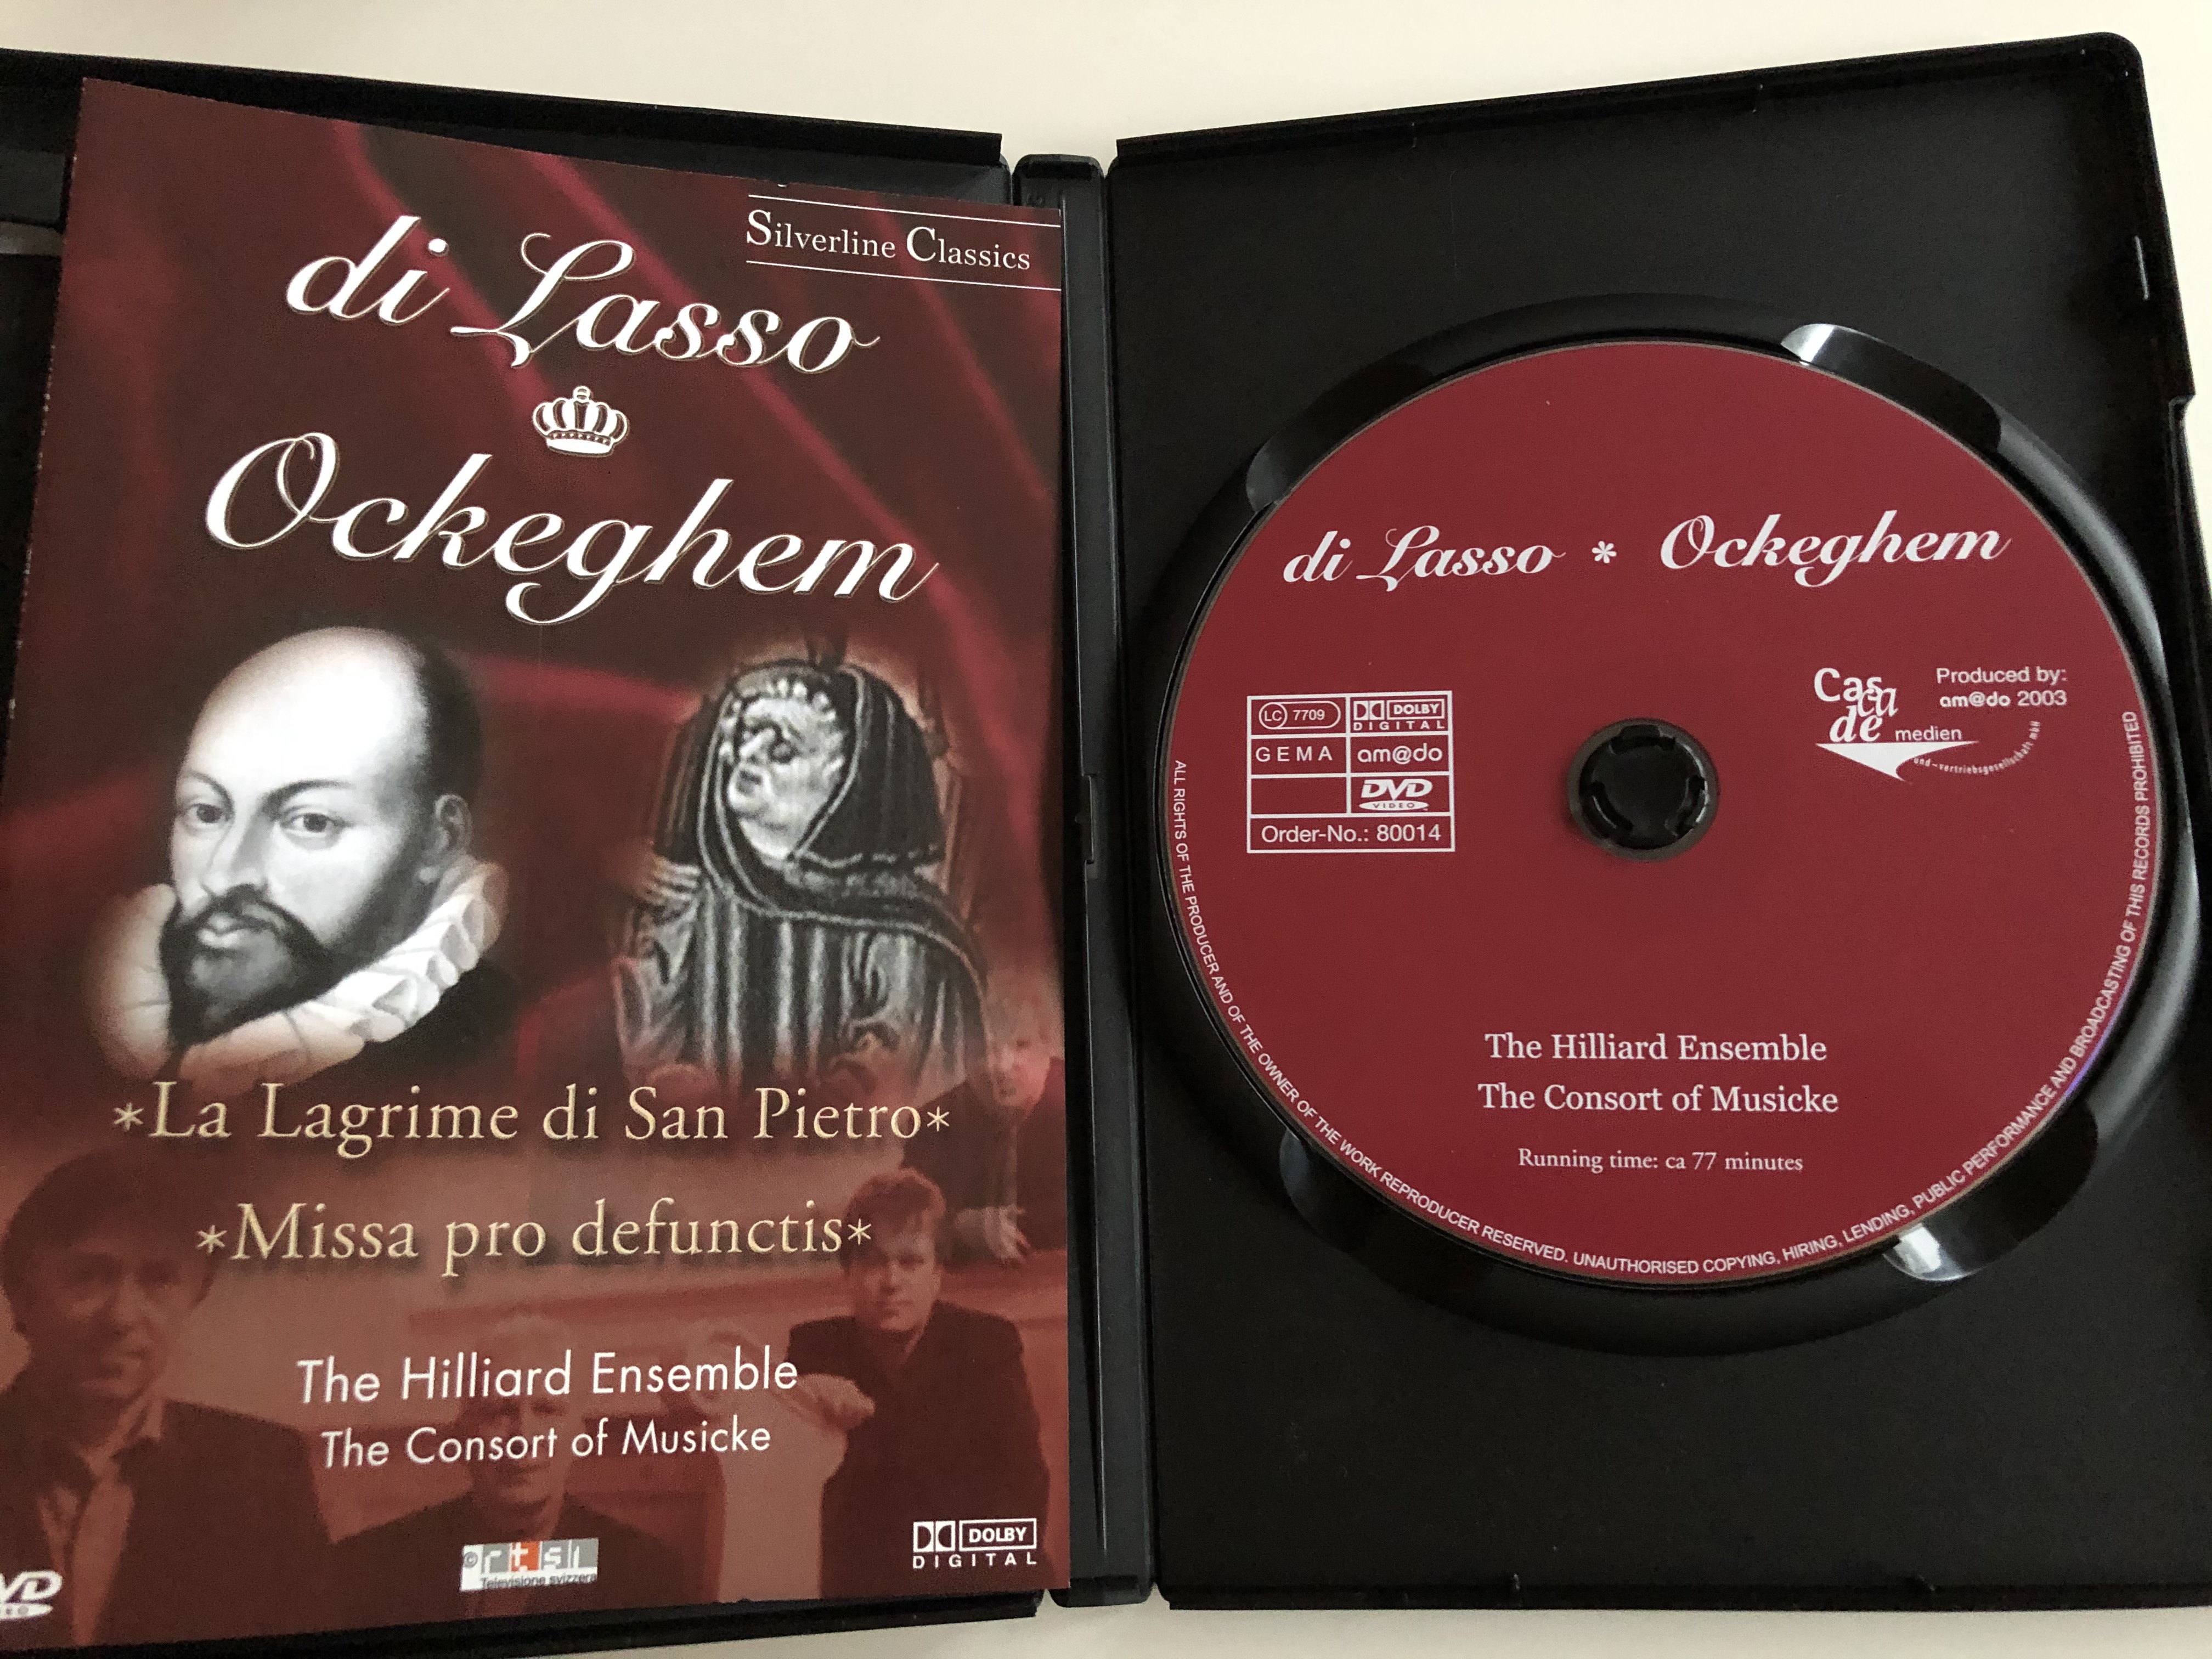 di-lasso-ockeghem-lagrime-di-san-pietro-missa-pro-defunctis-the-hilliard-ensemble-the-consort-of-musicke-silverline-classics-cascade-medien-dvd-2003-80014-2-.jpg